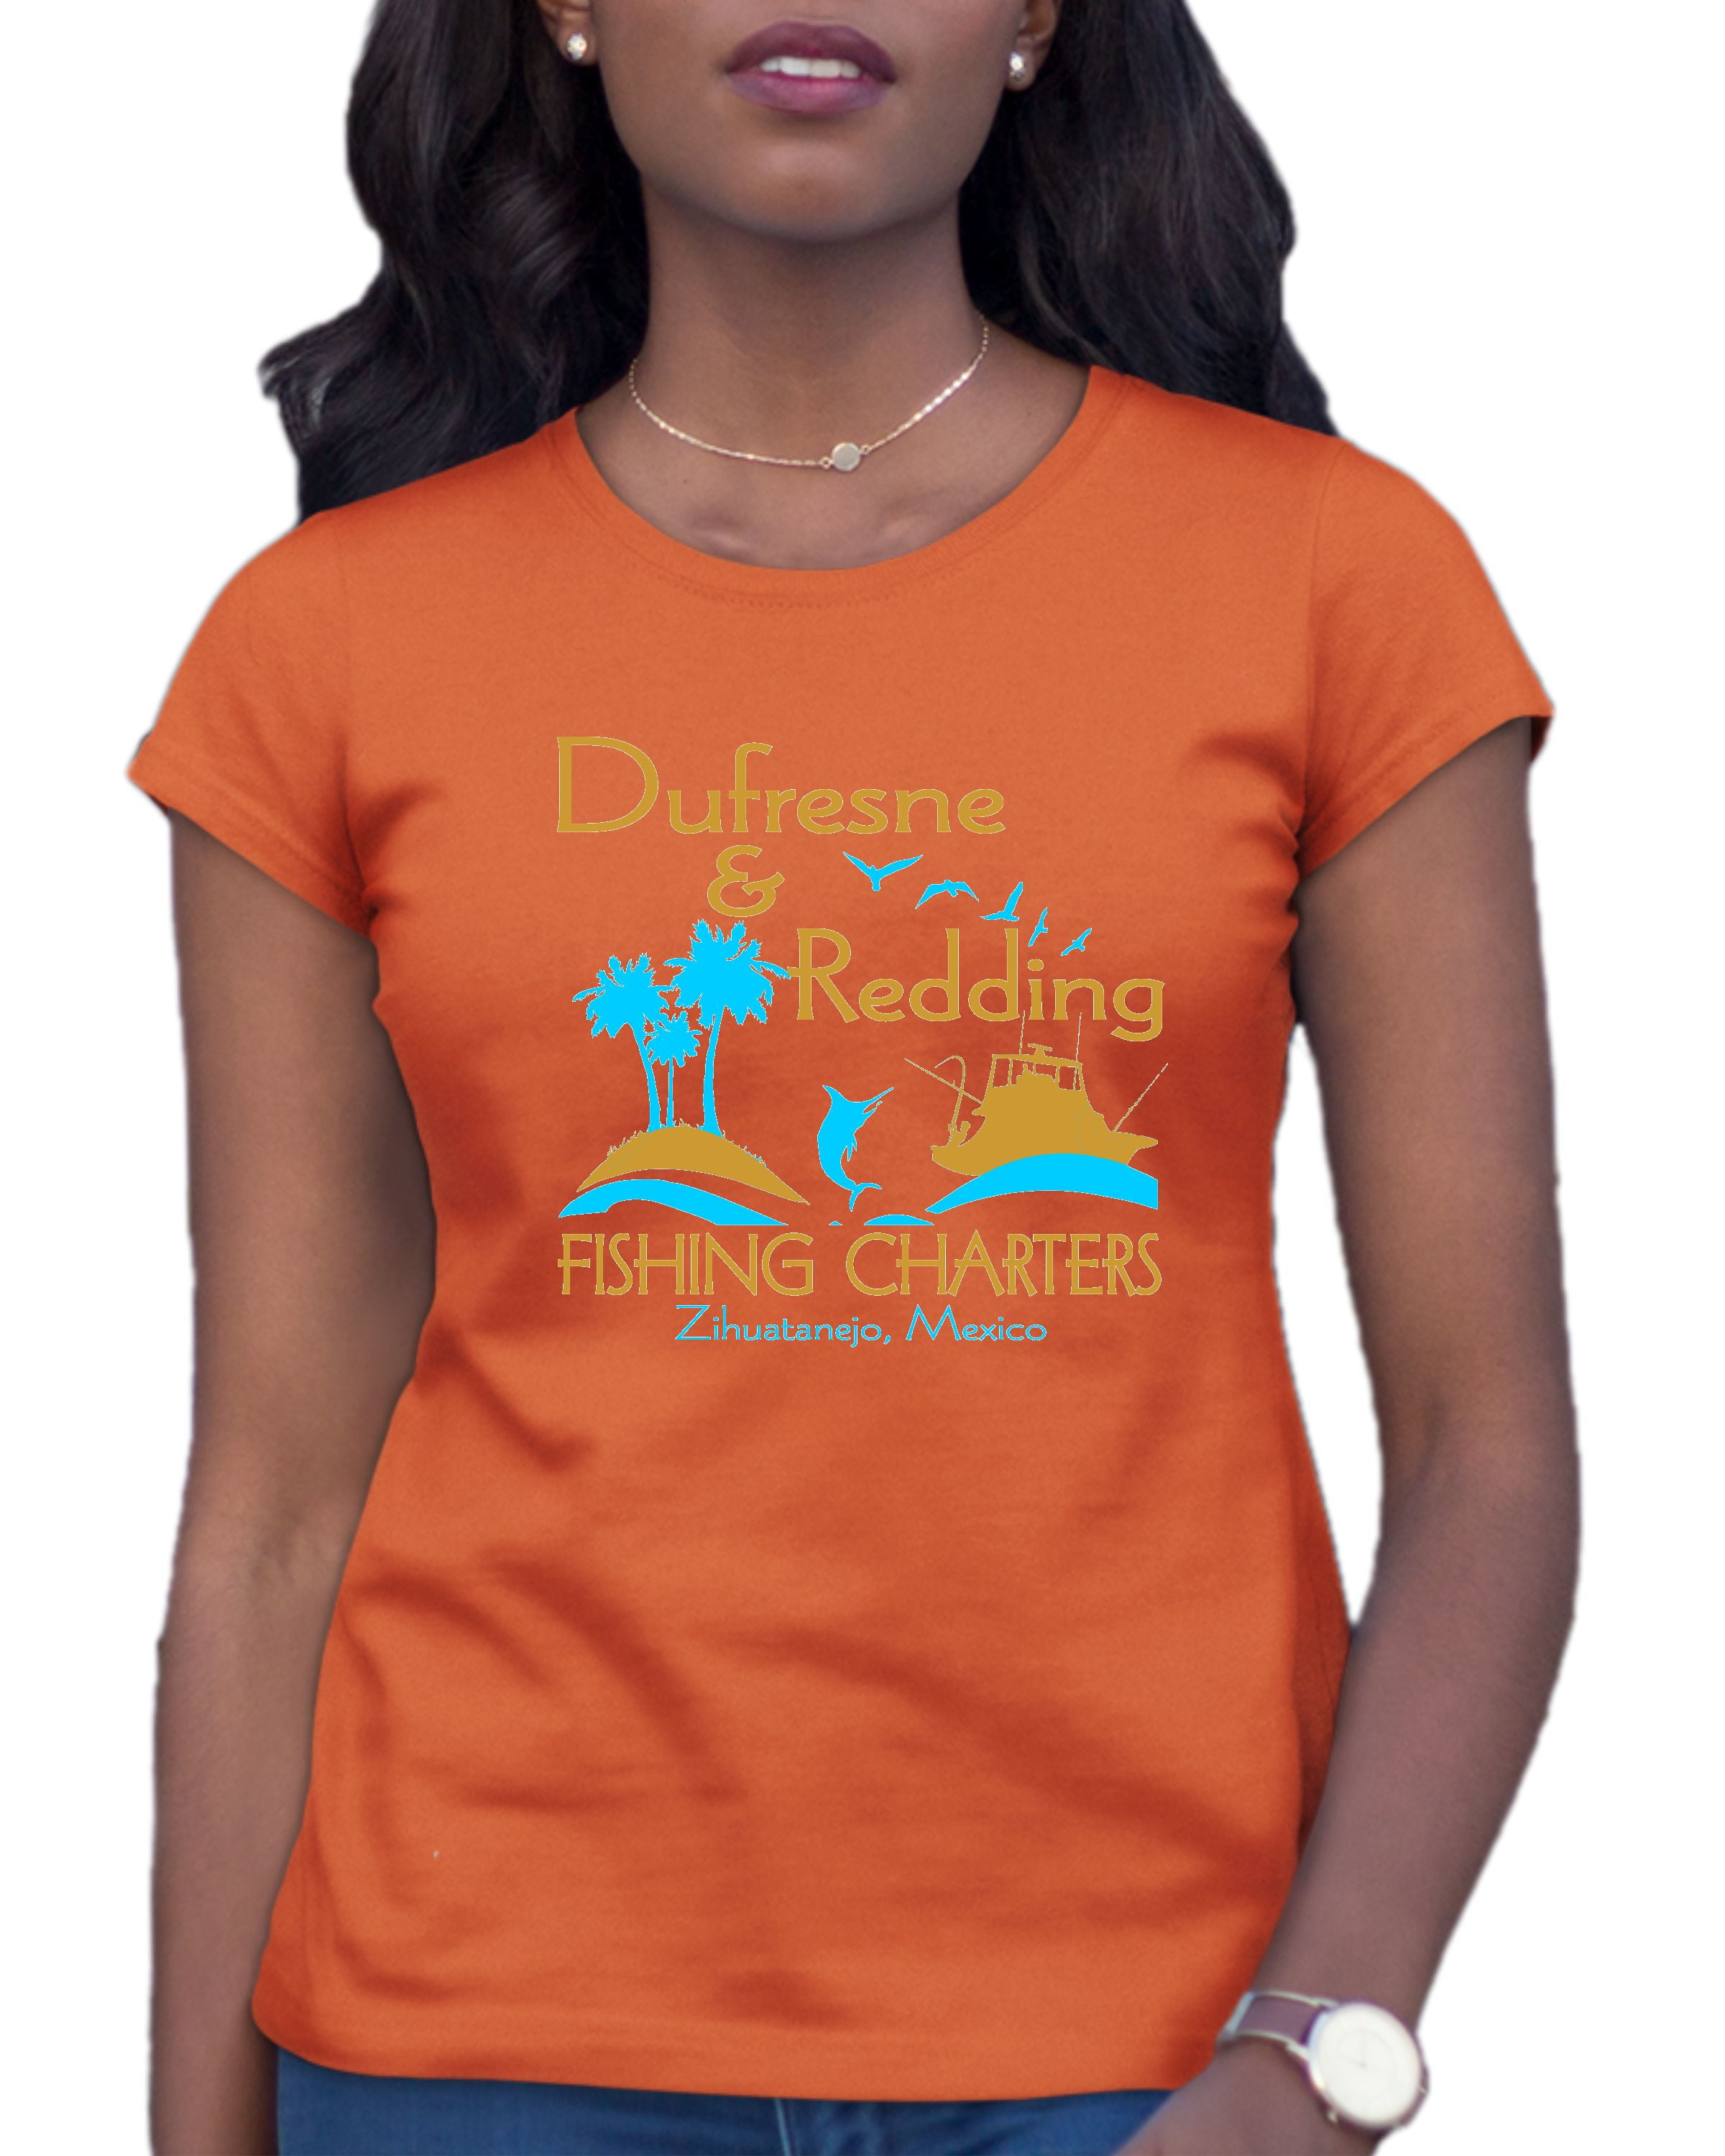  Fishing Shirts for Women - Fishing Shirt - Womens